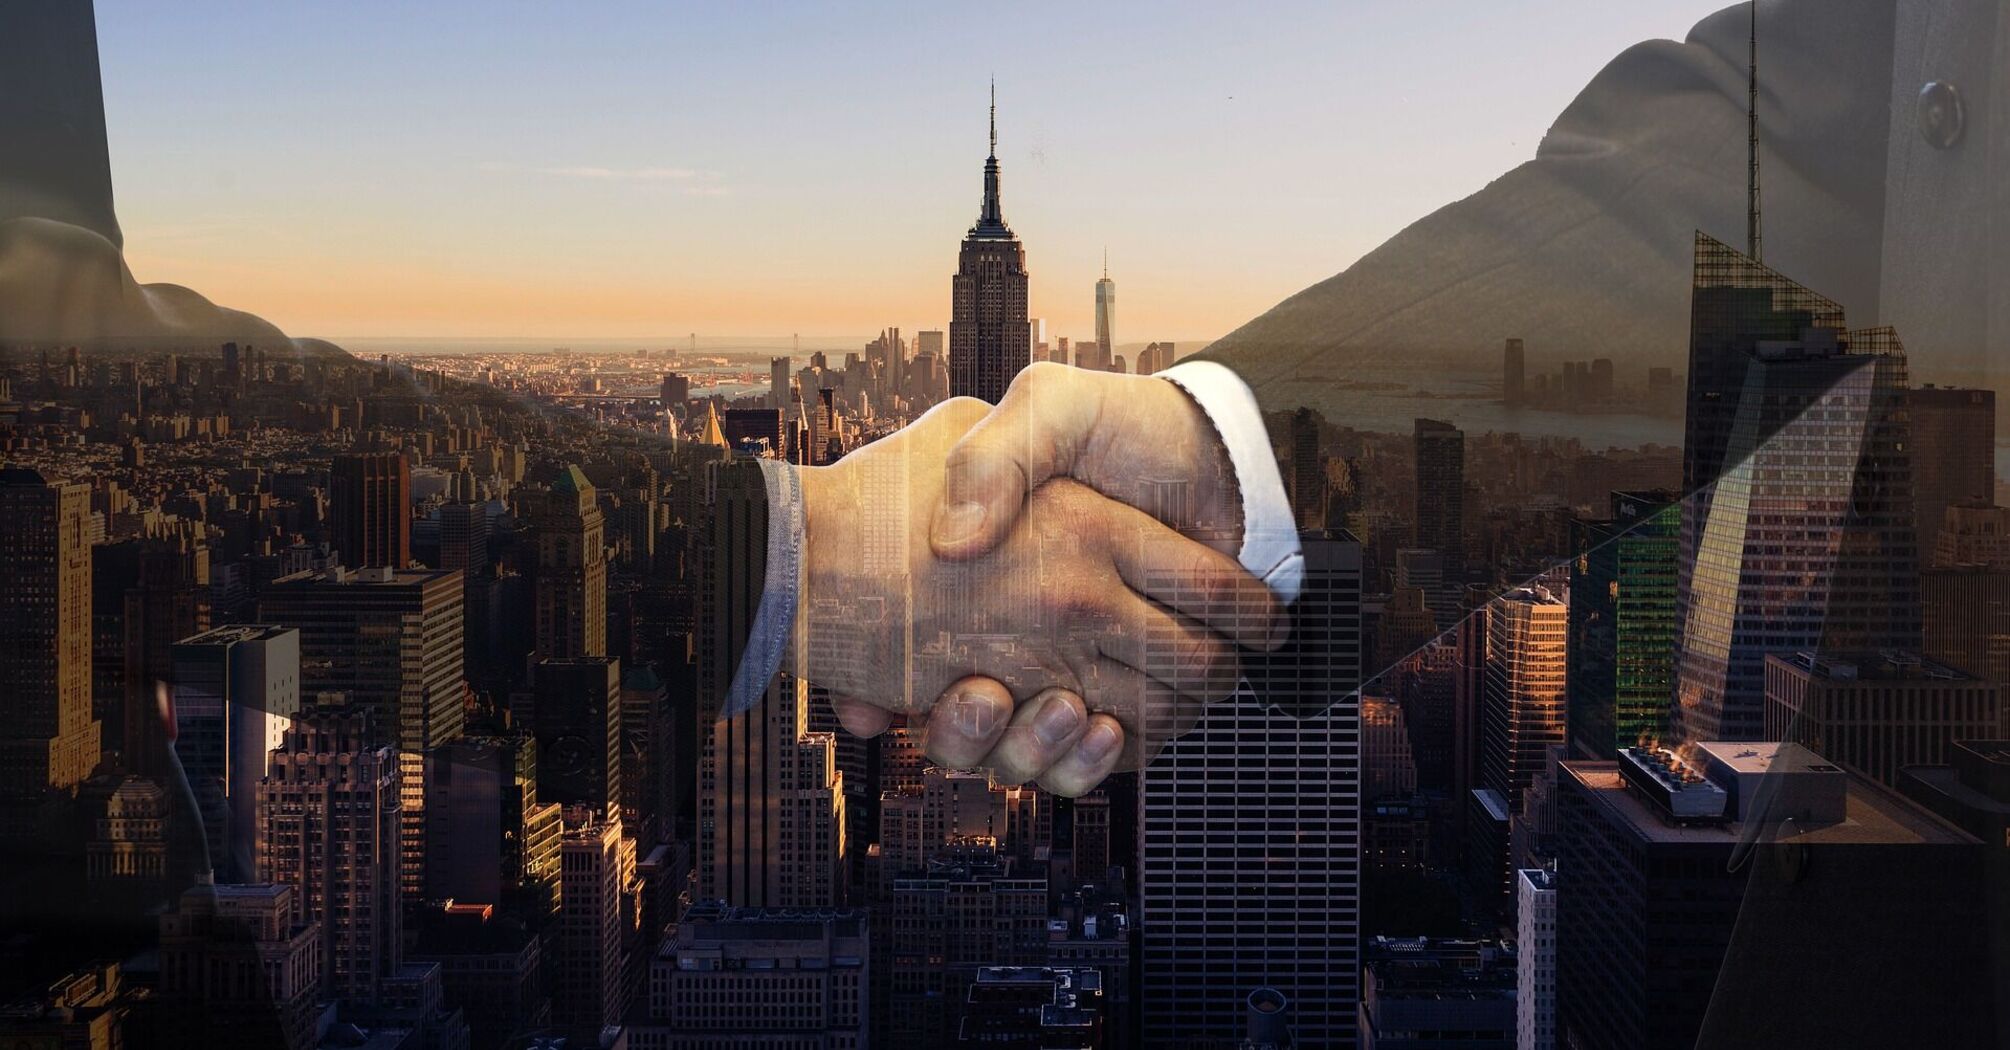 Handshake superimposed on a cityscape backdrop, symbolizing a business partnership